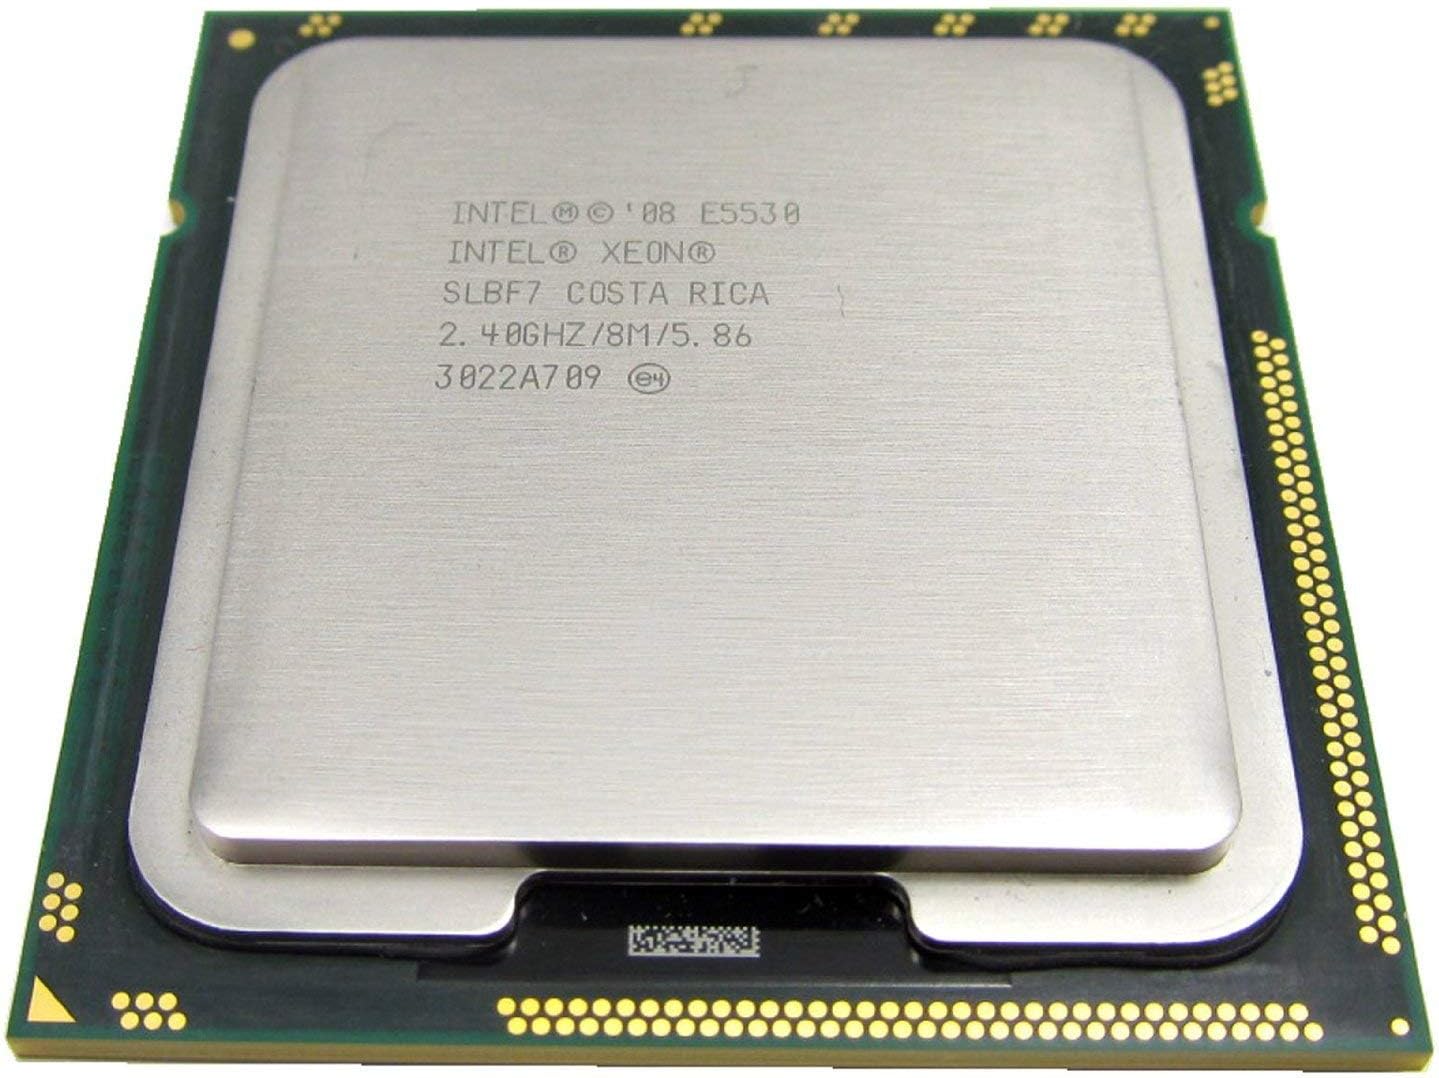 Intel Xeon E5530 Server CPU Processor- SLBF7